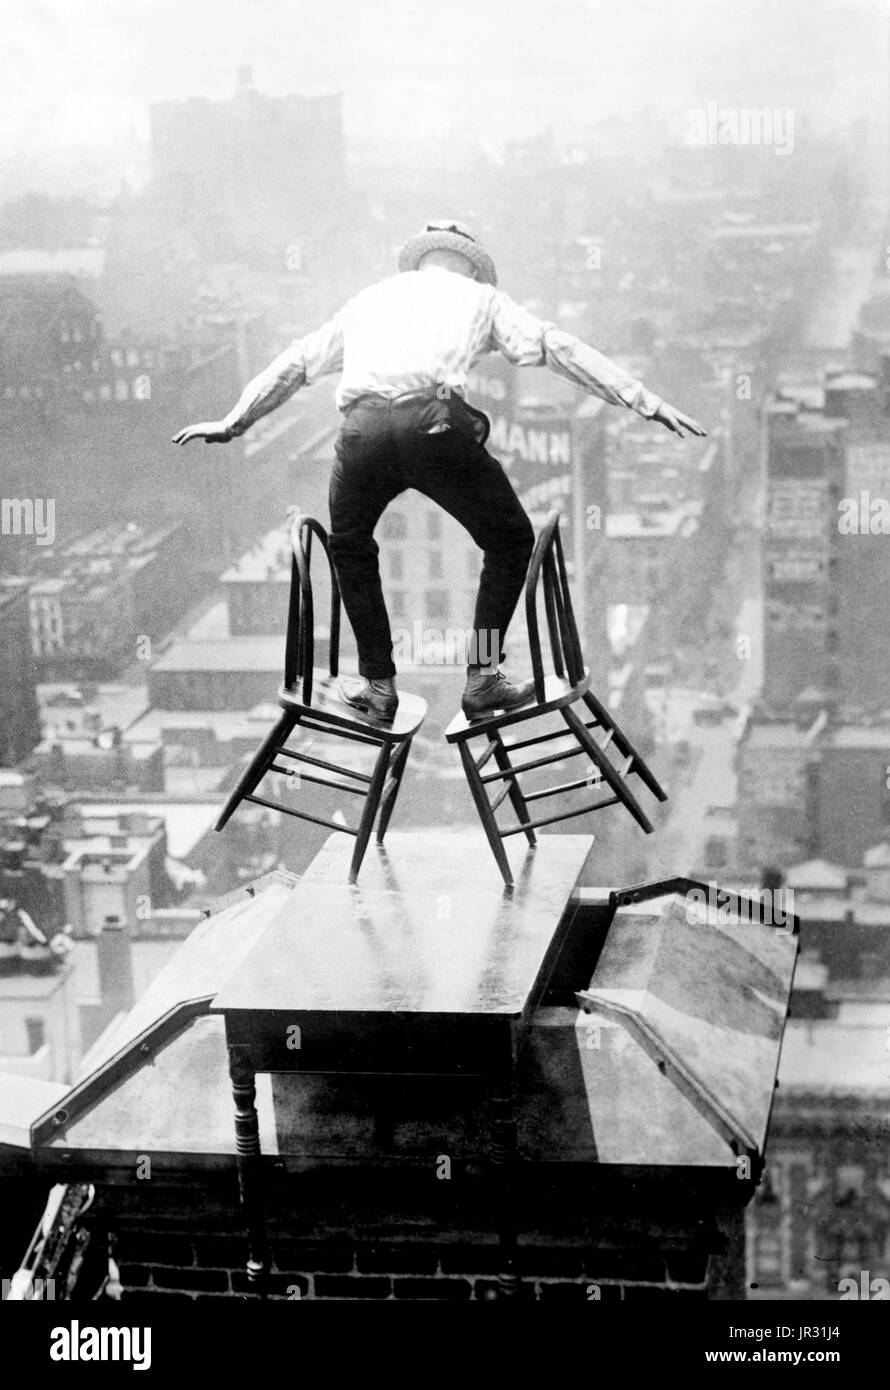 "Menschliche Fliege" Reynolds auf einem Dach in New York City. John "Jammie" Reynolds (geboren 1890 oder 91 -?) war ein US-amerikanischer Draufgänger. Wenig ist bekannt über das frühe Leben, was aus ihm geworden, nachdem er durchführen oder sogar sein richtiger Name gestoppt. Ein Acrobat und Jongleur, wurde er unter vielen Namen - Daredevil Johnny, Draufgänger Jack das Klettern Weltwunder, die Eidechse, die menschliche Spinne und menschliche fliegen bekannt. Ein Zeitungsartikel von 1922 behauptet, dass er begann im Alter von sechs in Buffalo, balancieren auf einem Bein aus einem Fahnenmast 140 Füße in der Luft. Seinen ersten großen Stunt kam im Alter von 12, wenn er auf der Seite der alten geklettert Stockfoto